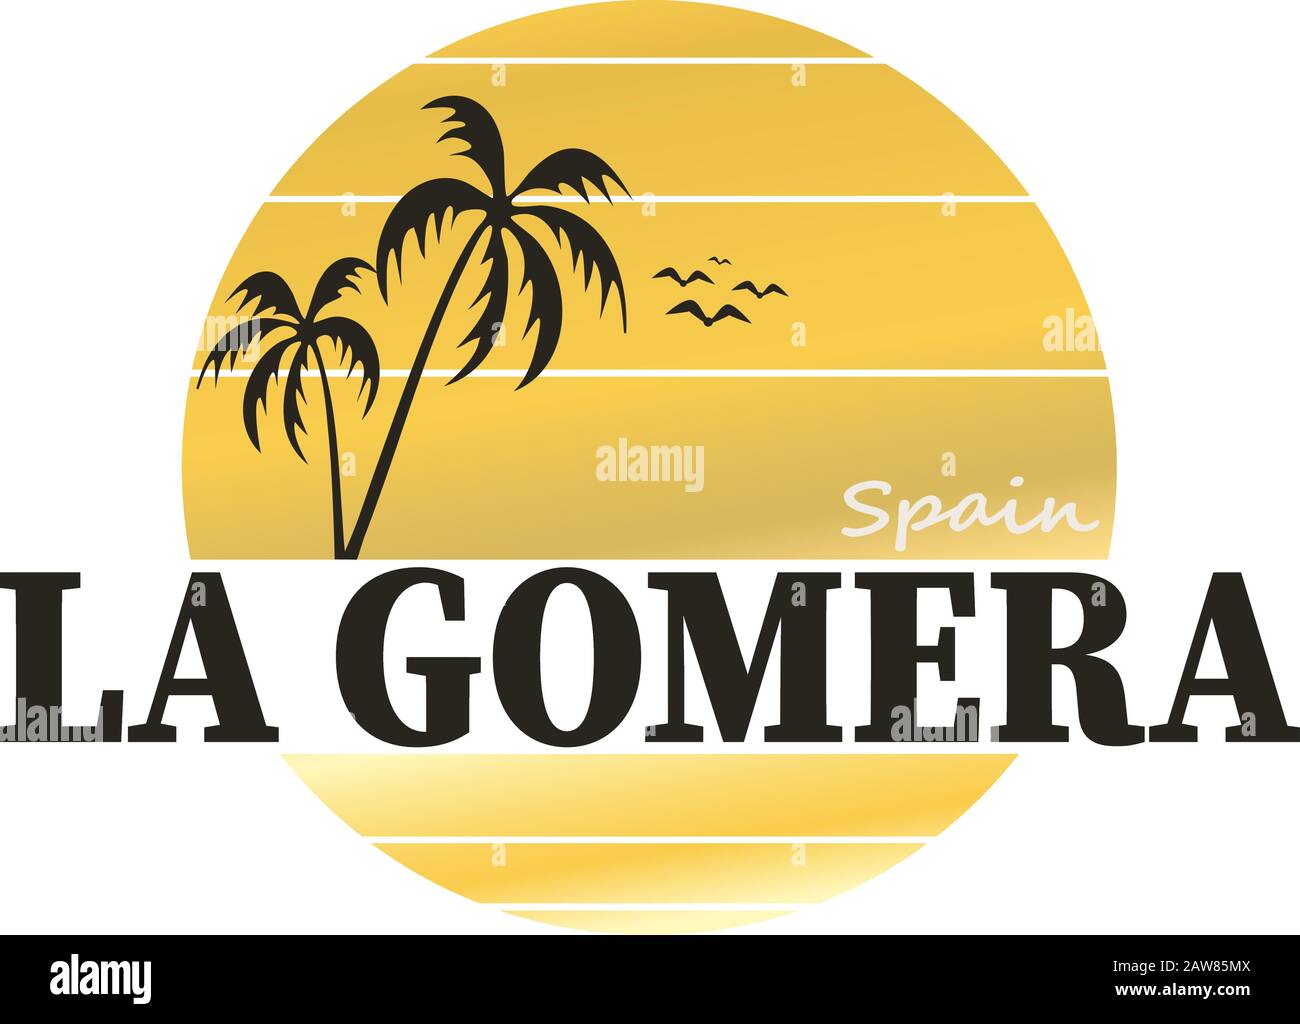 La Gomera Vintage Schild. Handgefertigtes Retro-Label, -Abzeichen oder -Element für Reiseandenken. Stock Vektor